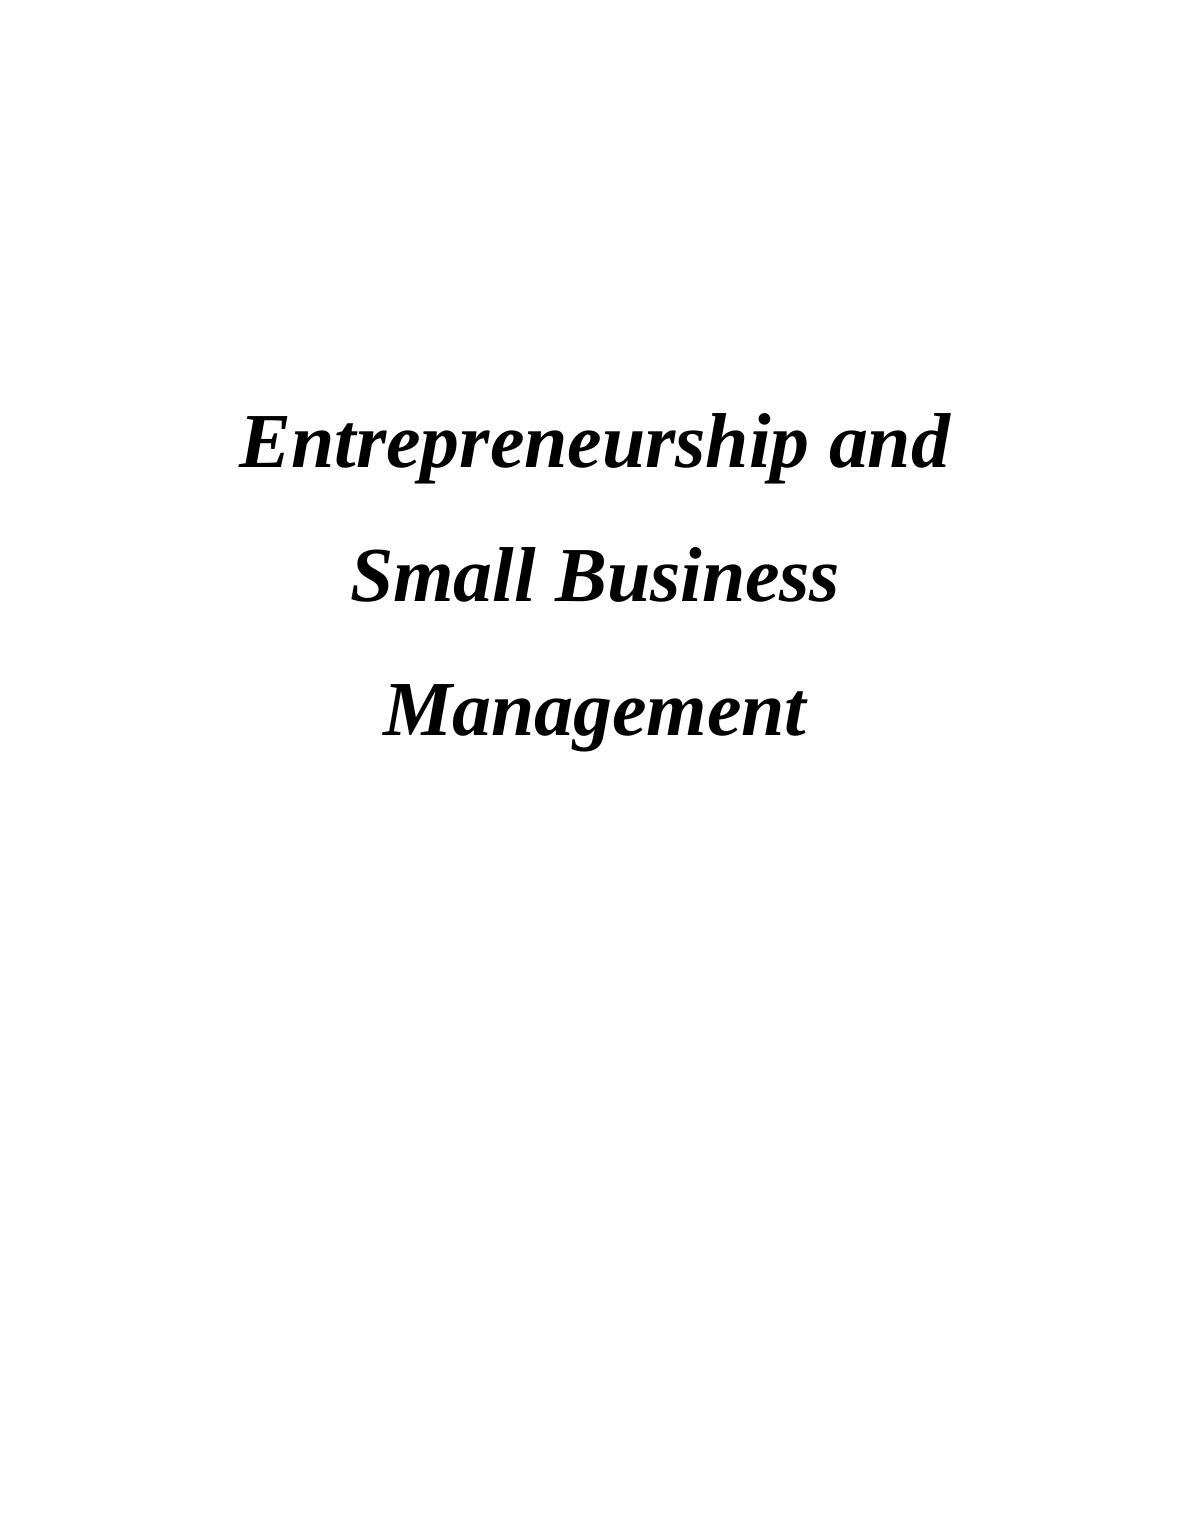 Entrepreneurship & Small Business Management Skills_1